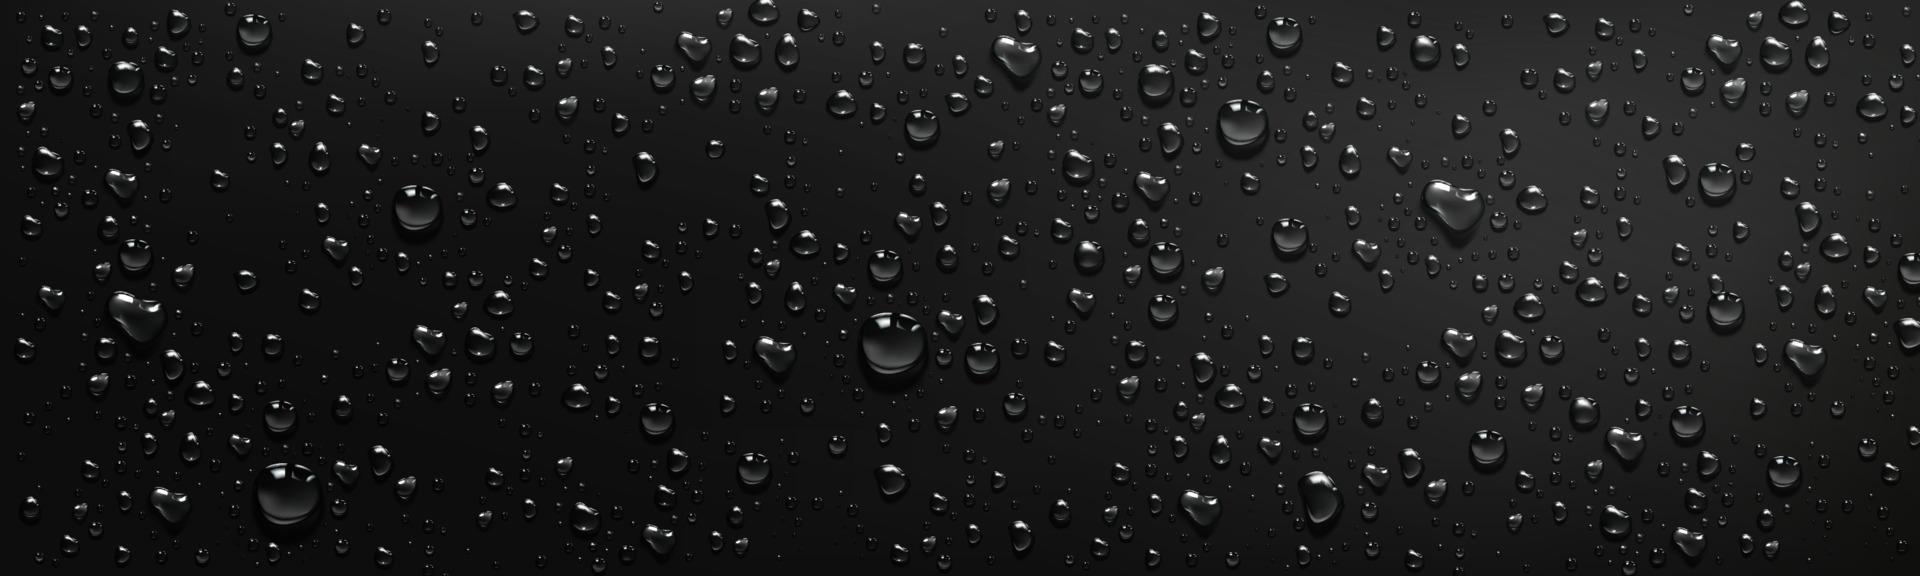 gocce d'acqua su sfondo nero vettore